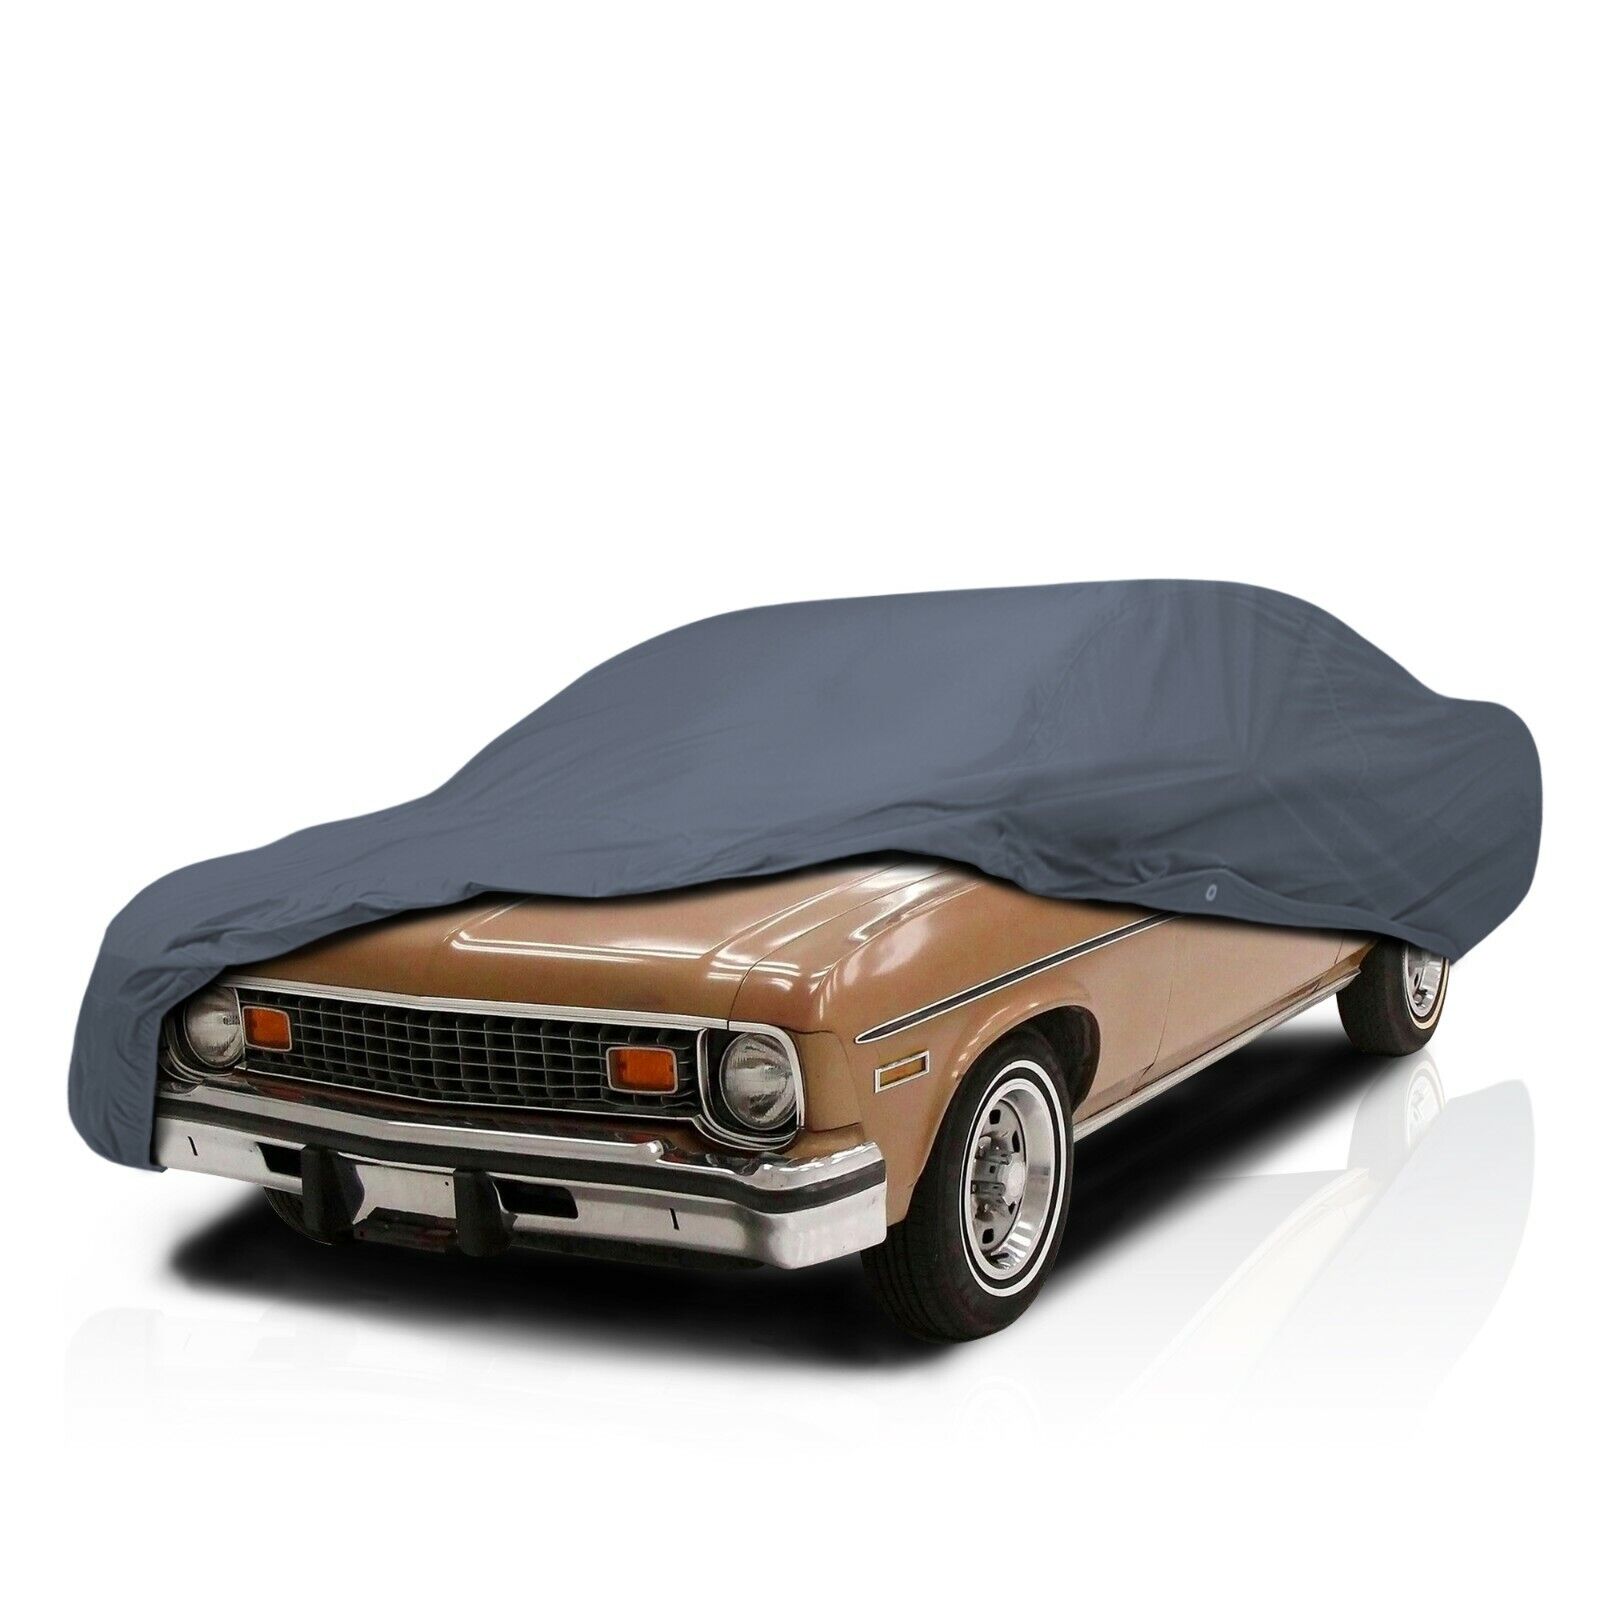 [CCT] 5 Layer Semi-Custom Full Car Cover For Chevrolet Chevy II/ Nova 1968-1974